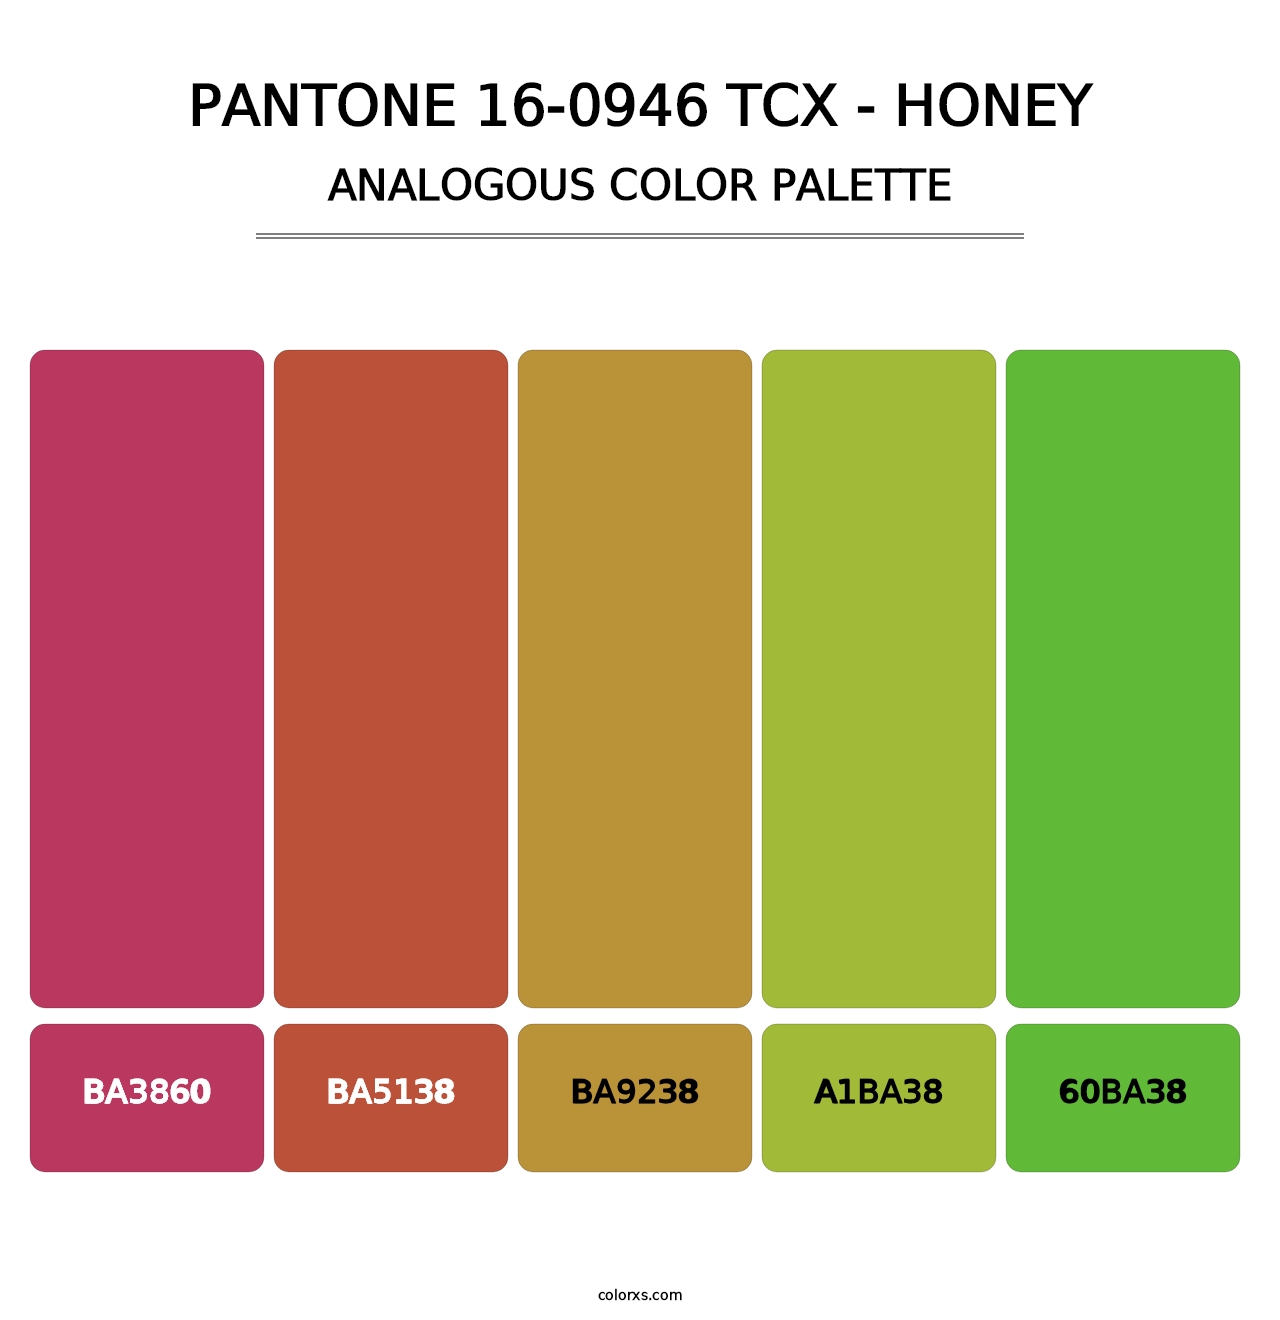 PANTONE 16-0946 TCX - Honey - Analogous Color Palette